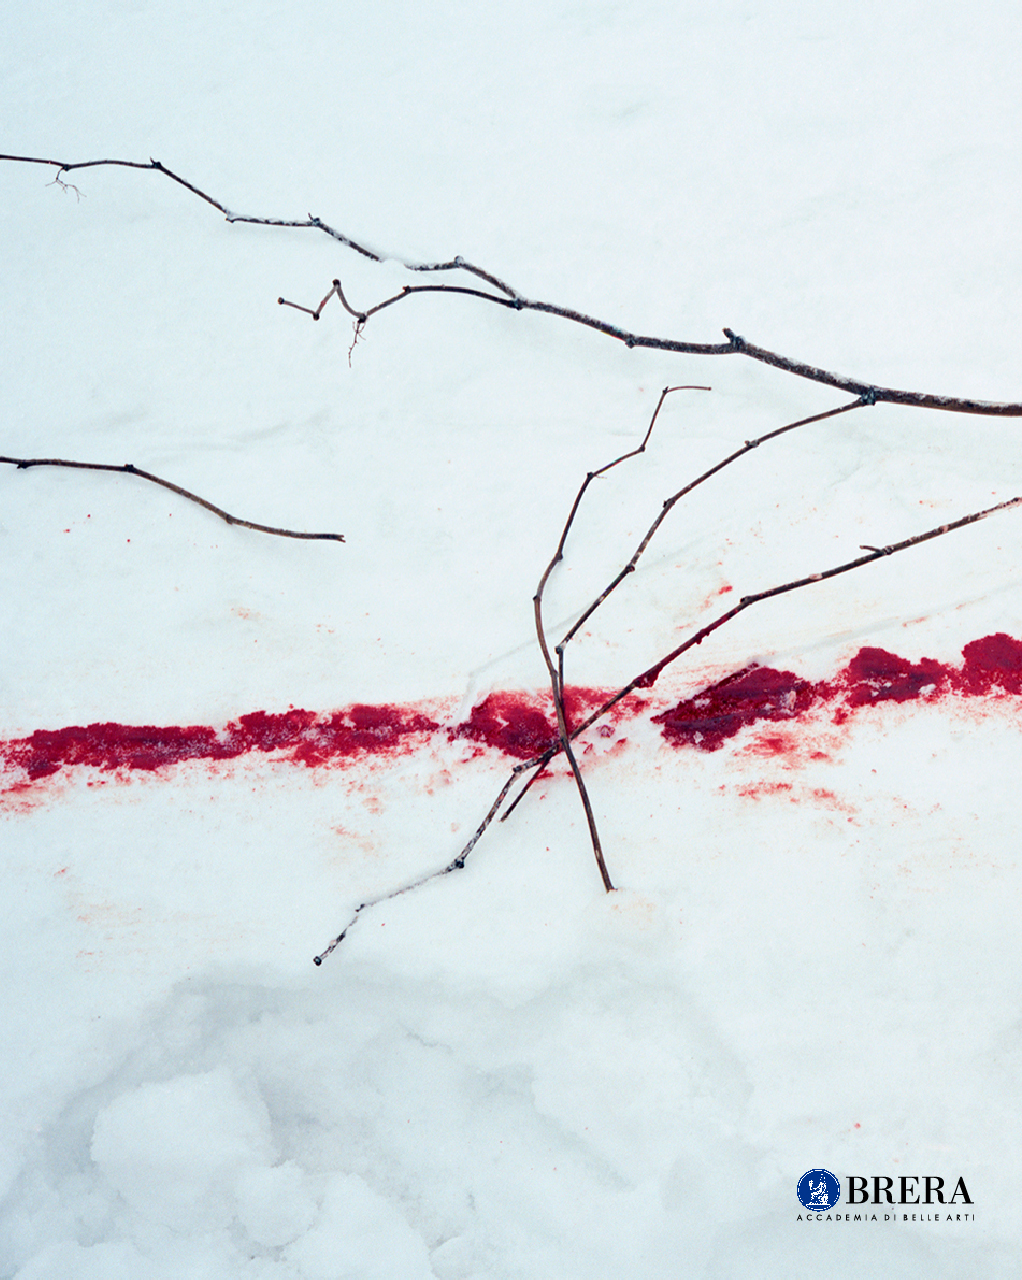 Immagine di macchia rossa sulla neve